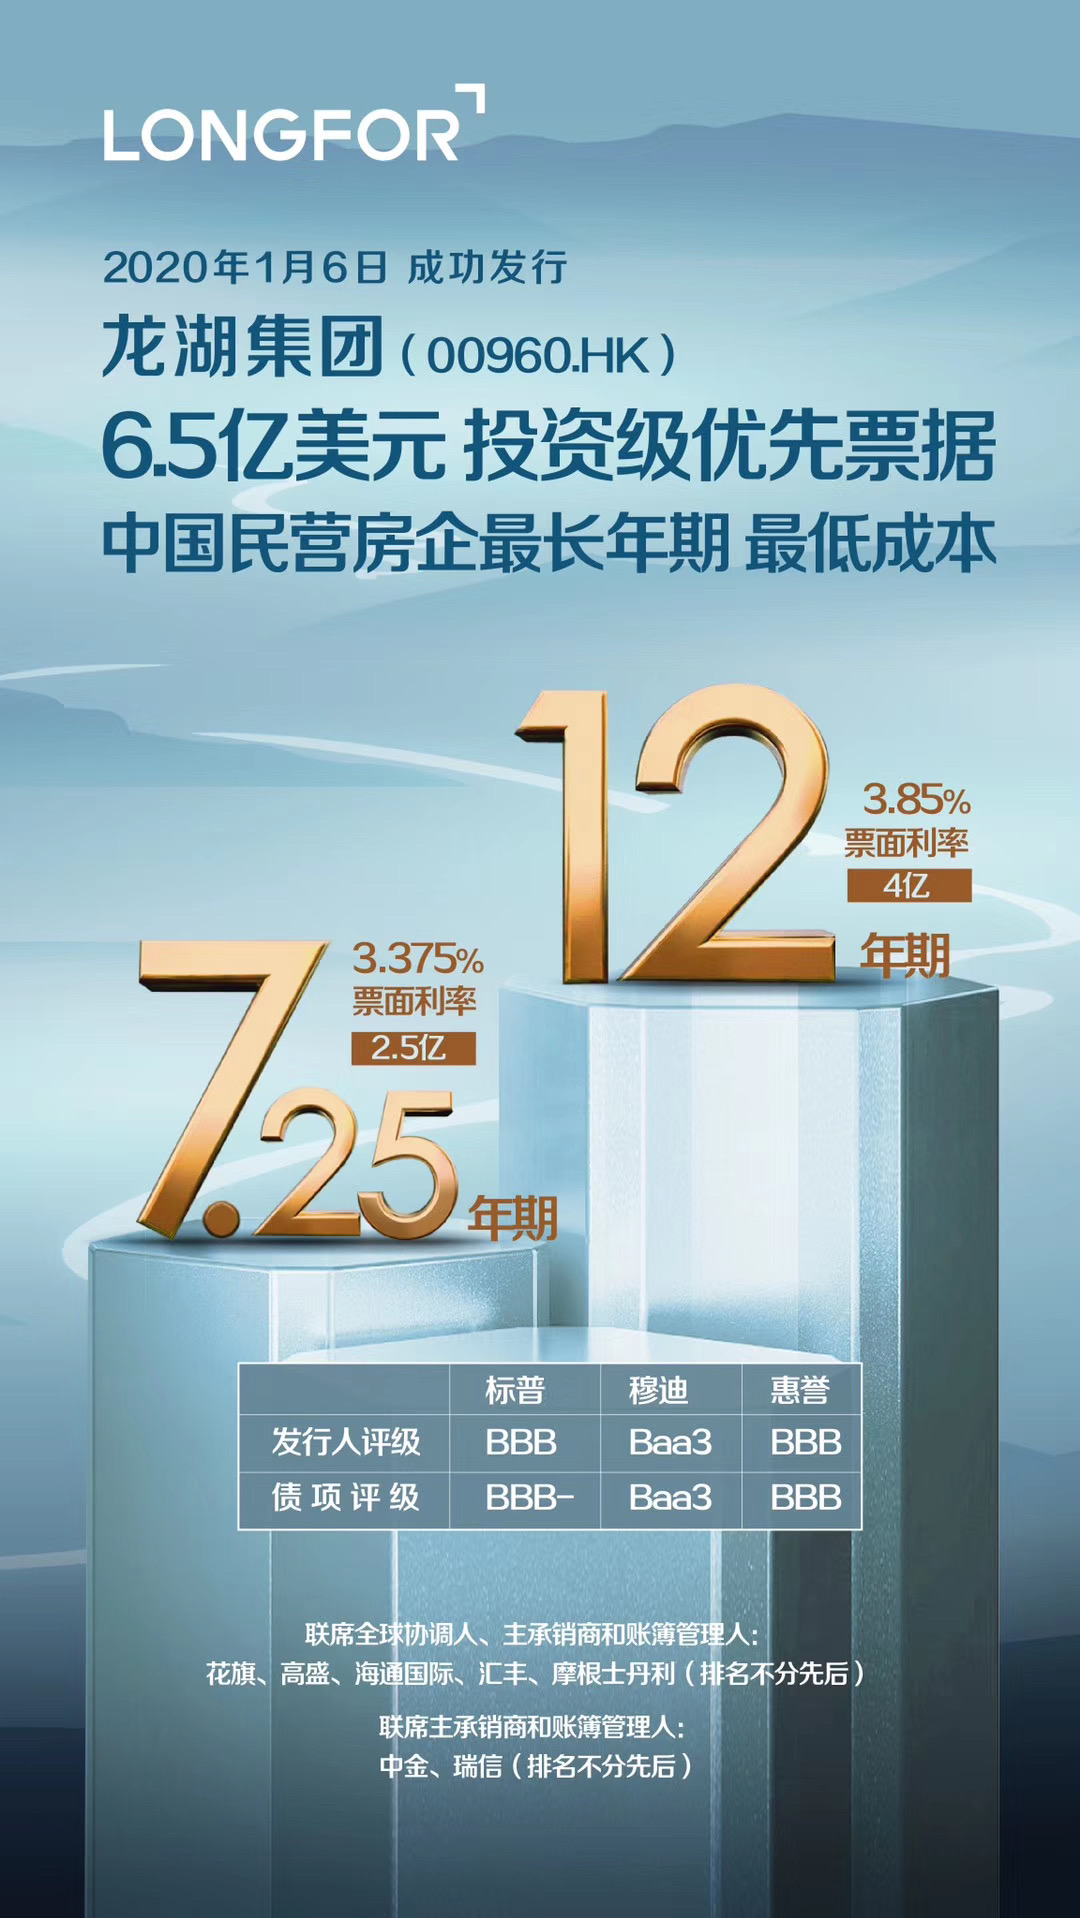  龙湖集团发行6.5亿美元票据 <br/>创中国民营房企最长年期最低票息